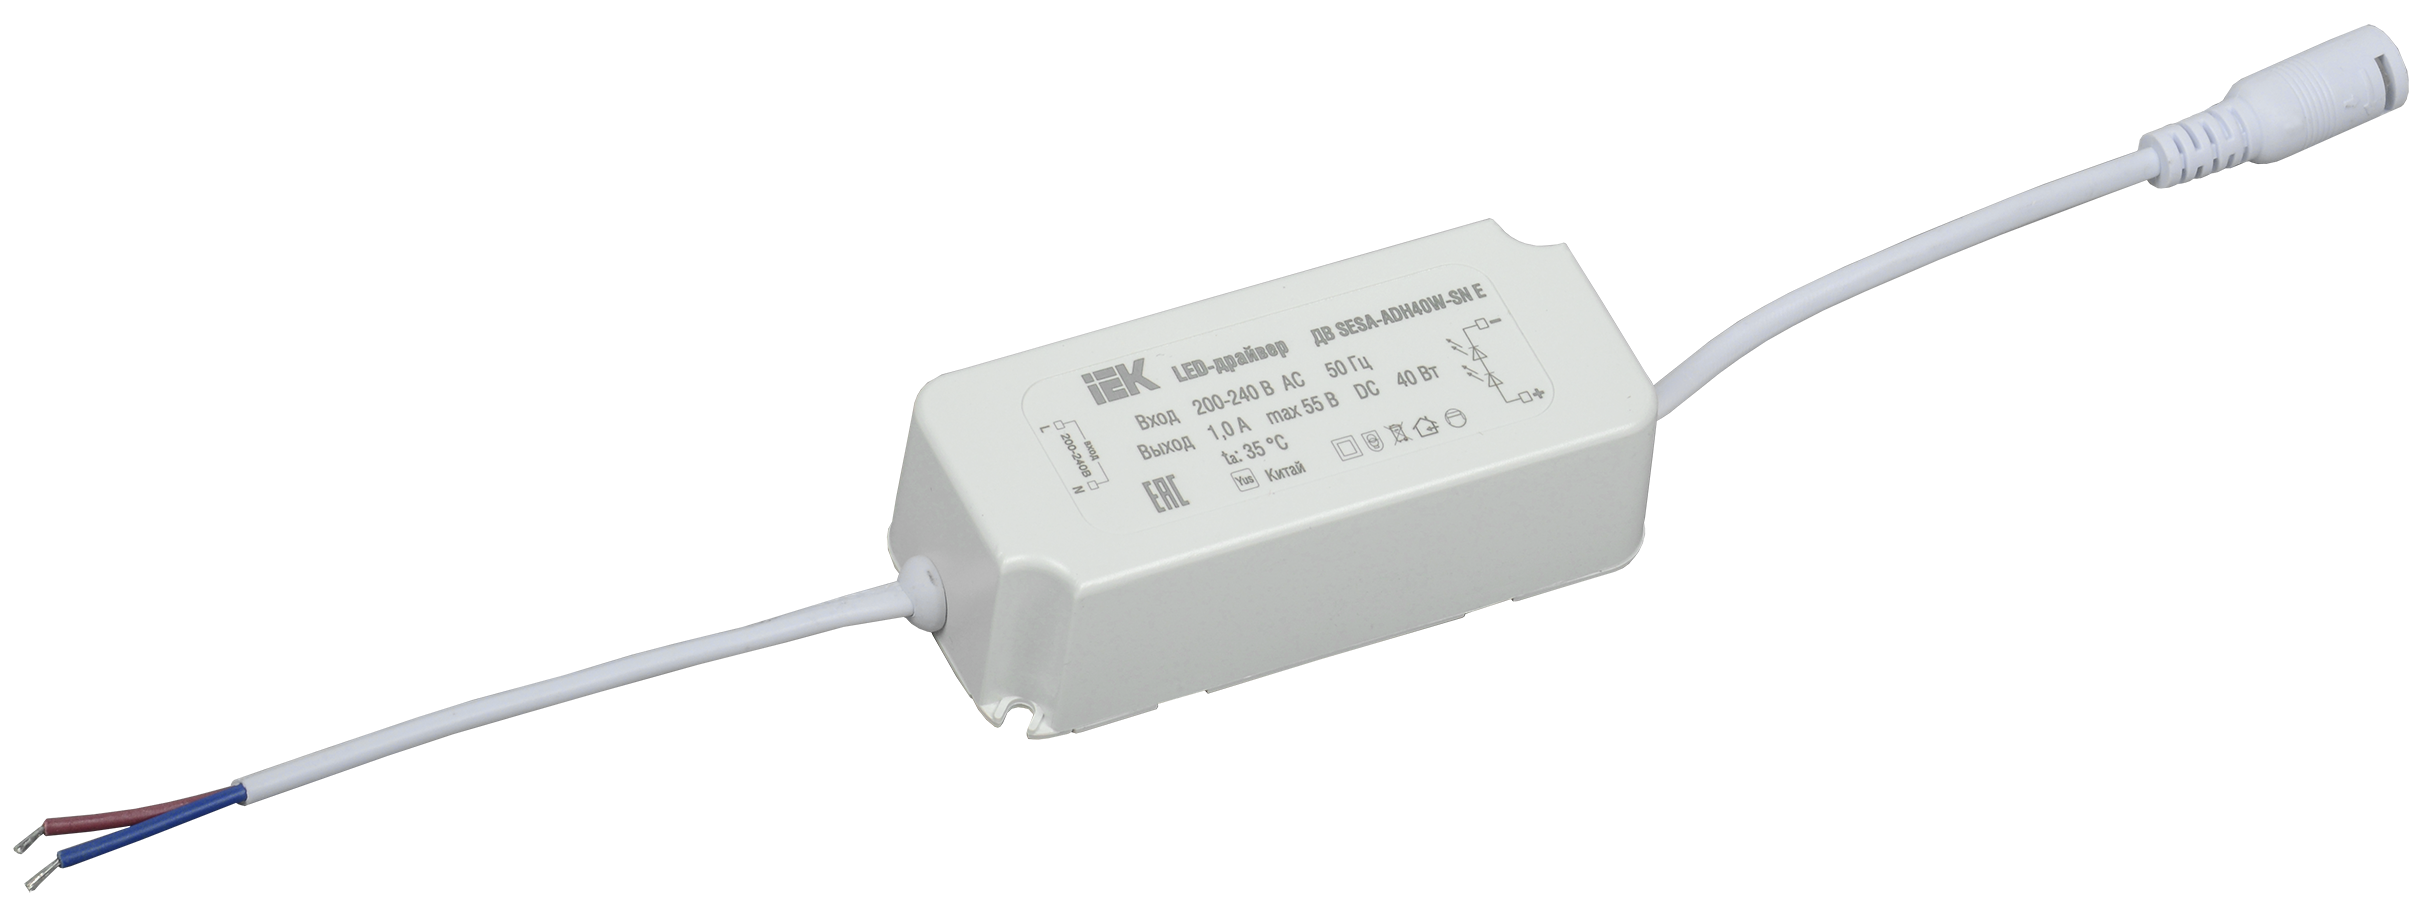 LED-драйвер тип ДВ SESA-ADH40W-SN Е, для LED светильников 40Вт IEK